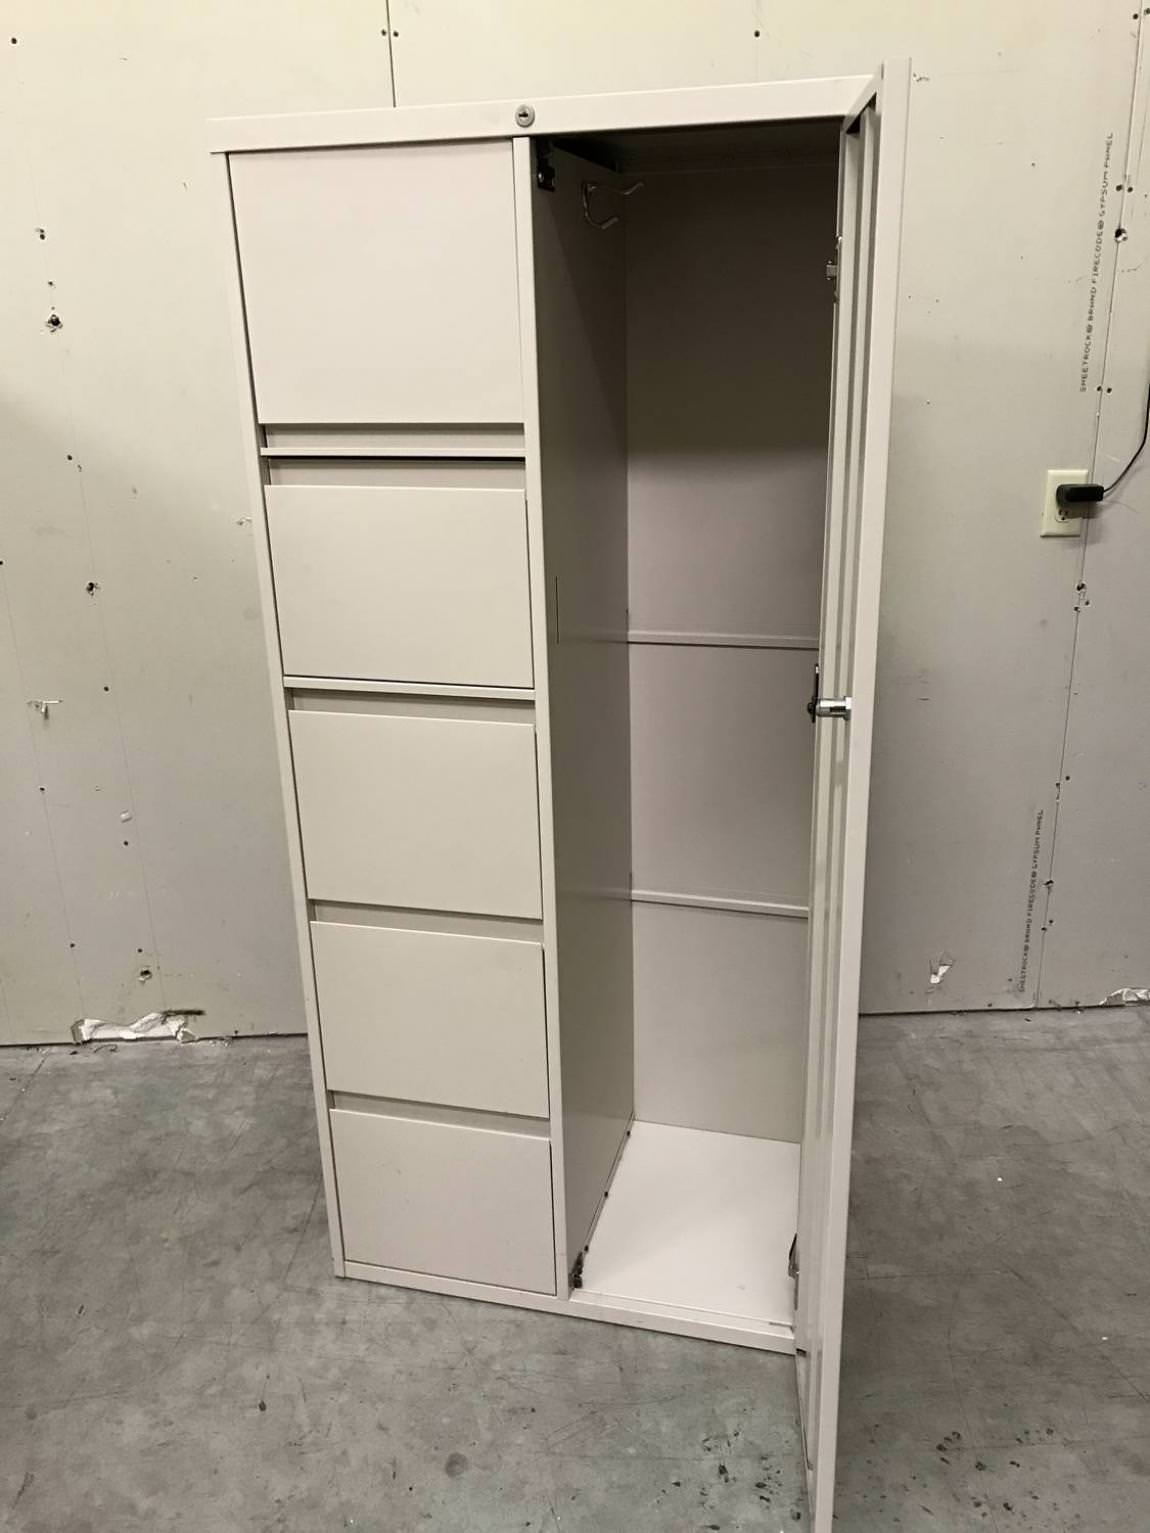 Steelcase File Cabinet with Wardrobe Locker